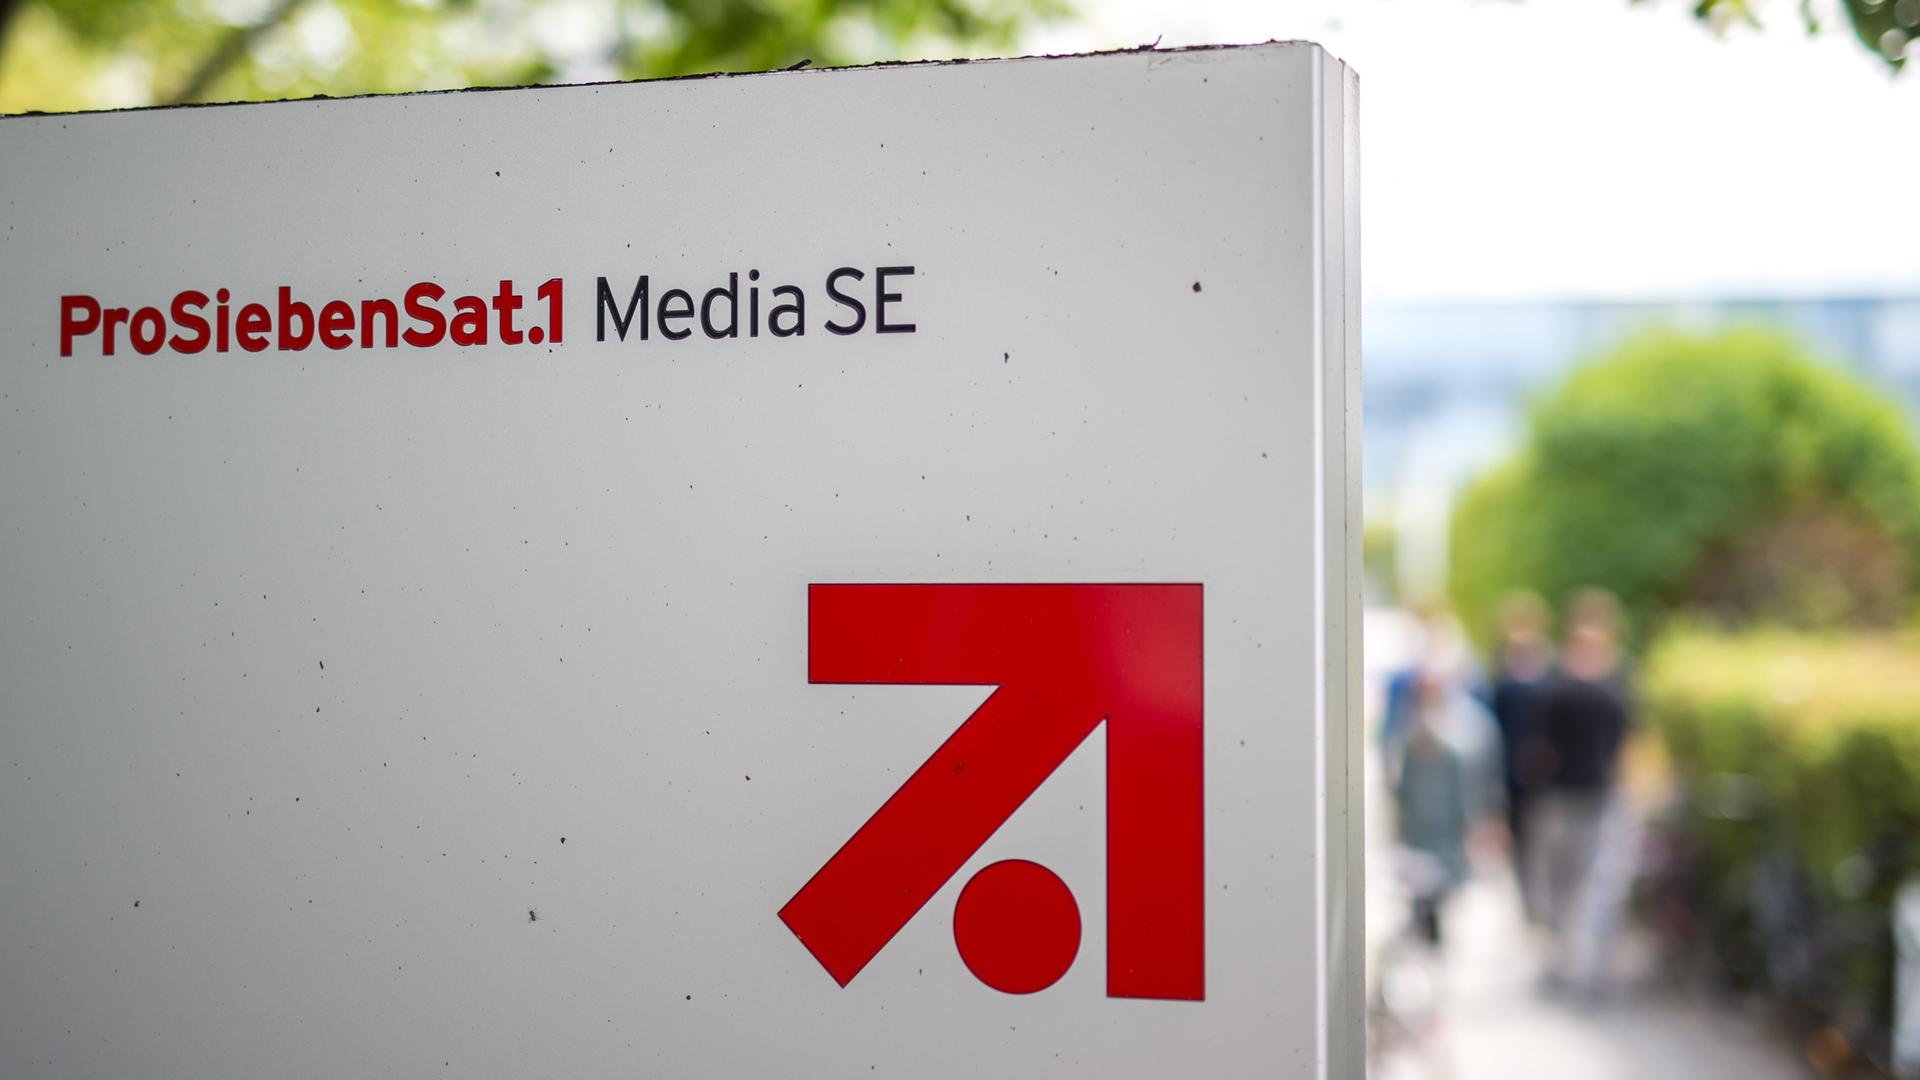 Das Logo und der Schriftzug der "ProSiebenSat.1 Media SE" auf einem weißen Schild